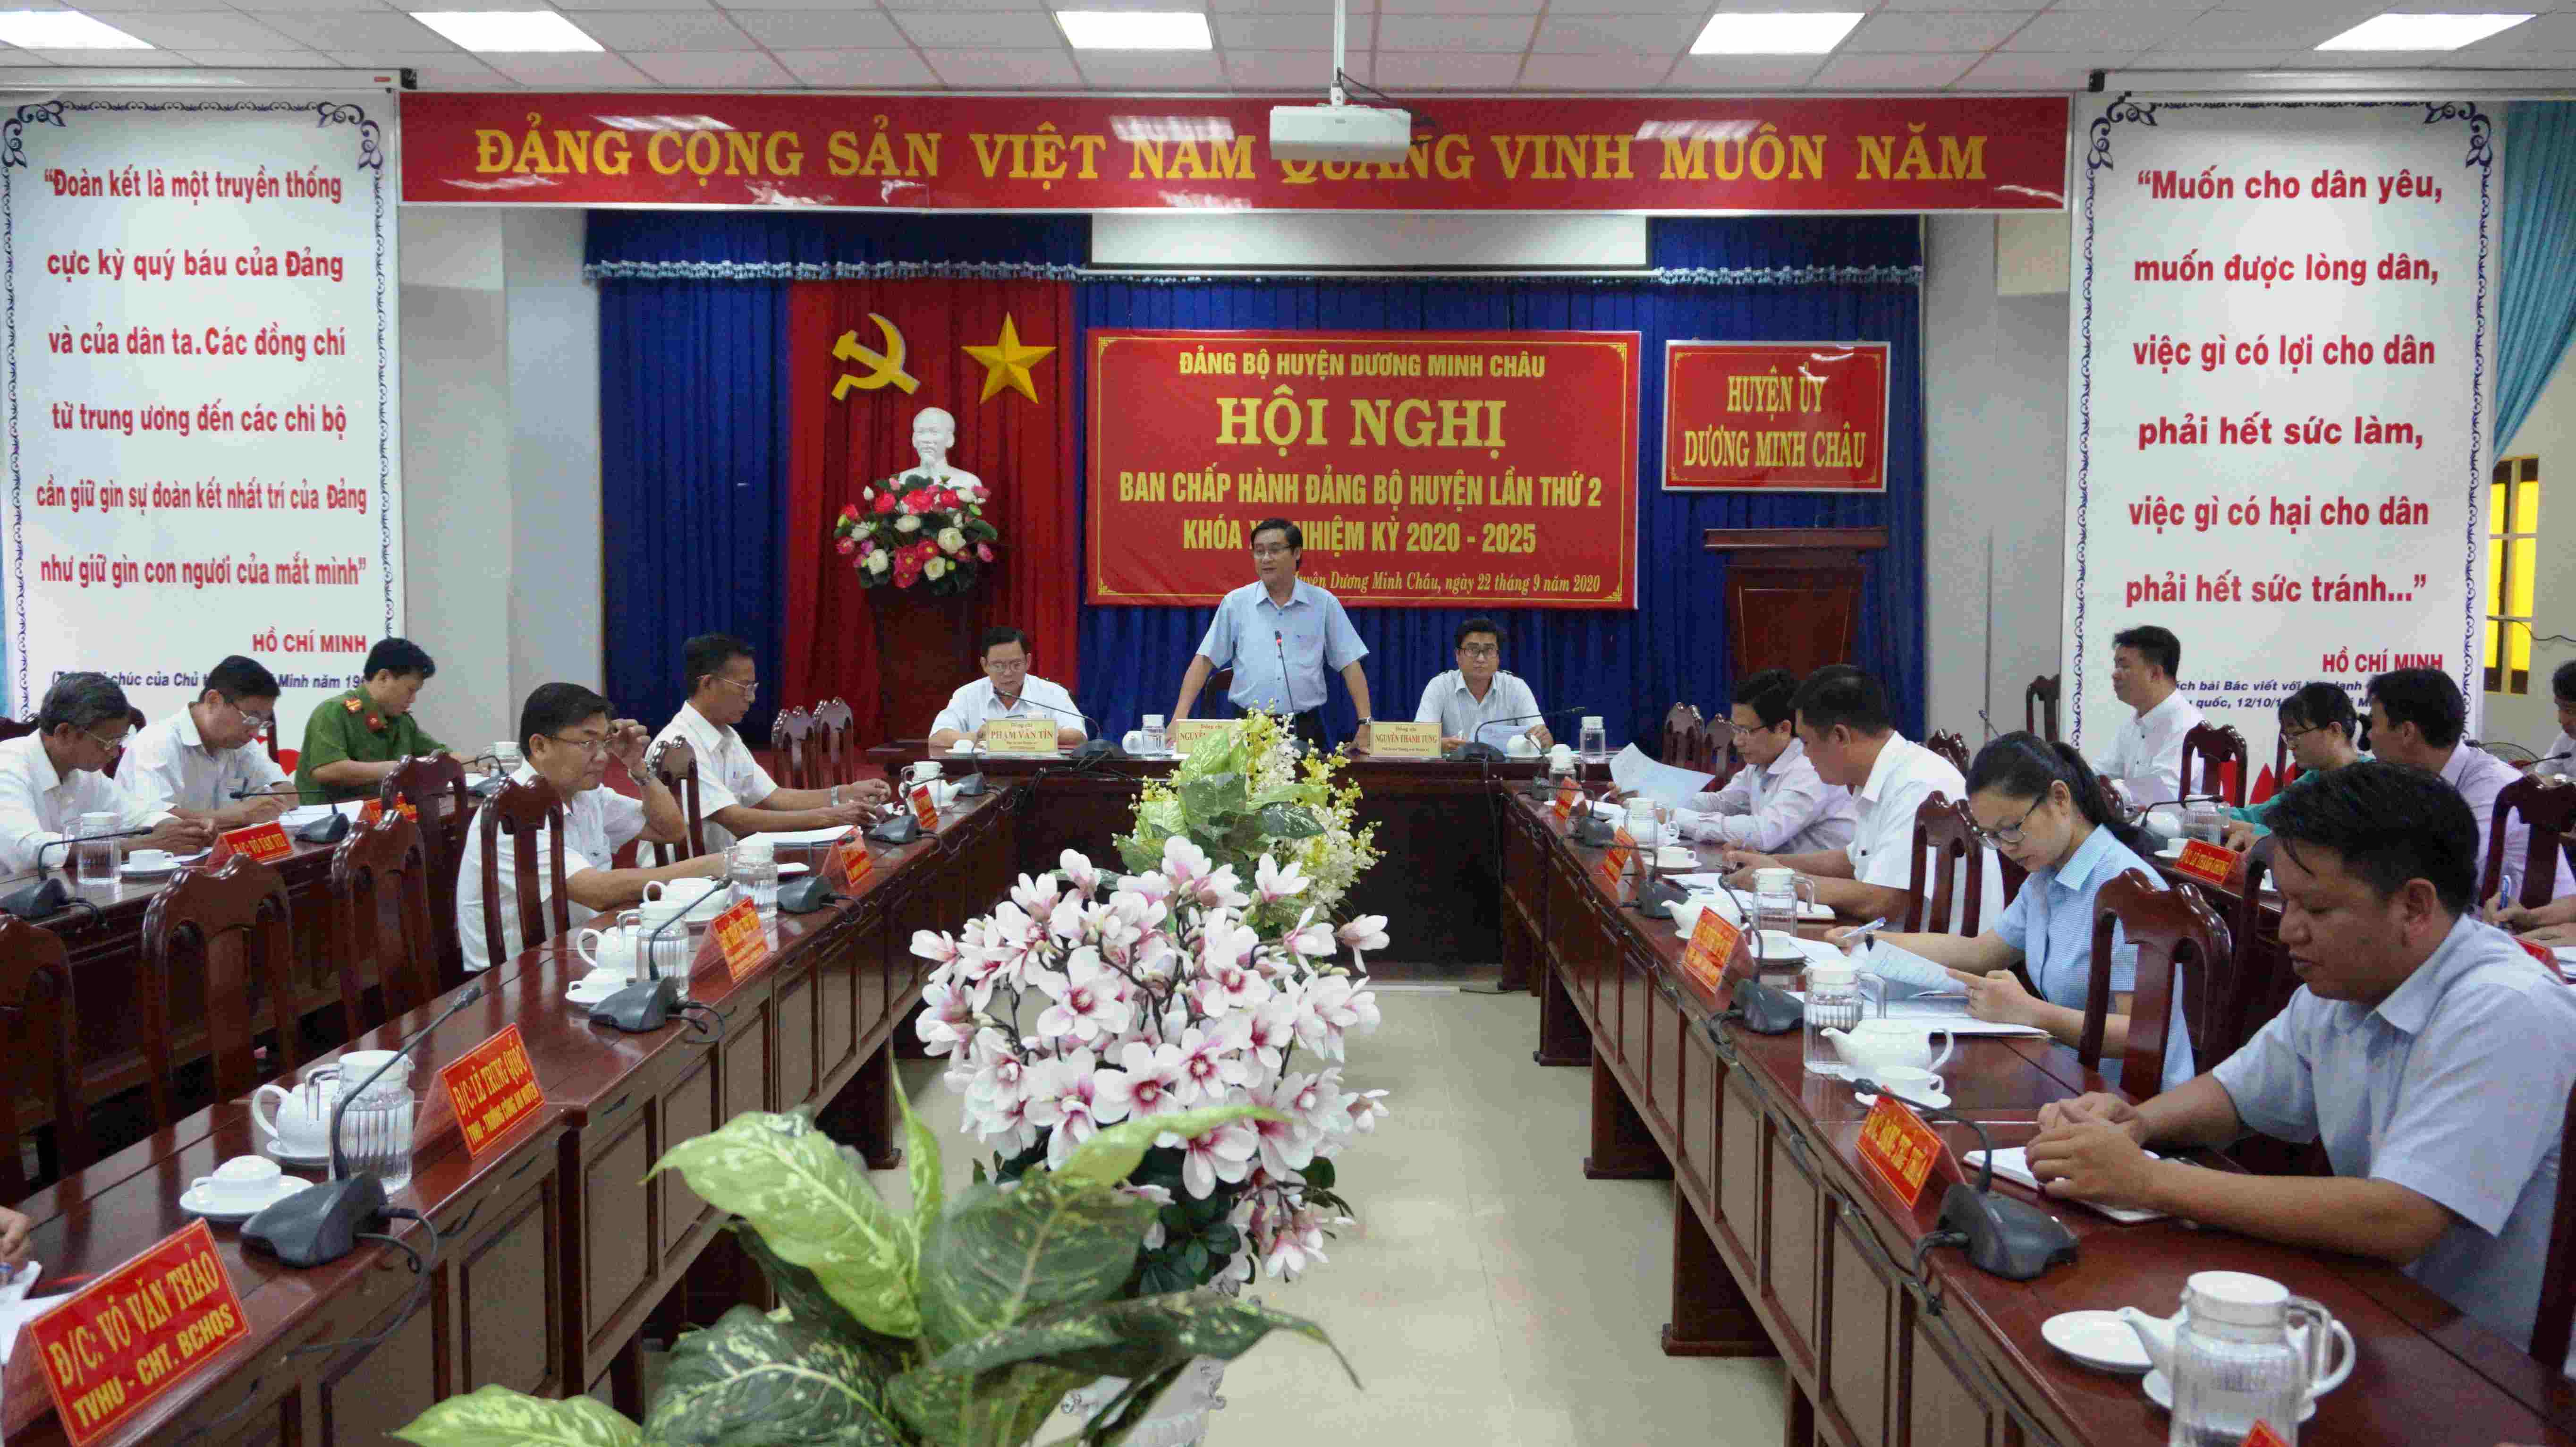 Huyện ủy Dương Minh Châu: Tổ chức hội nghị Ban Chấp hành Đảng bộ huyện lần thứ 2